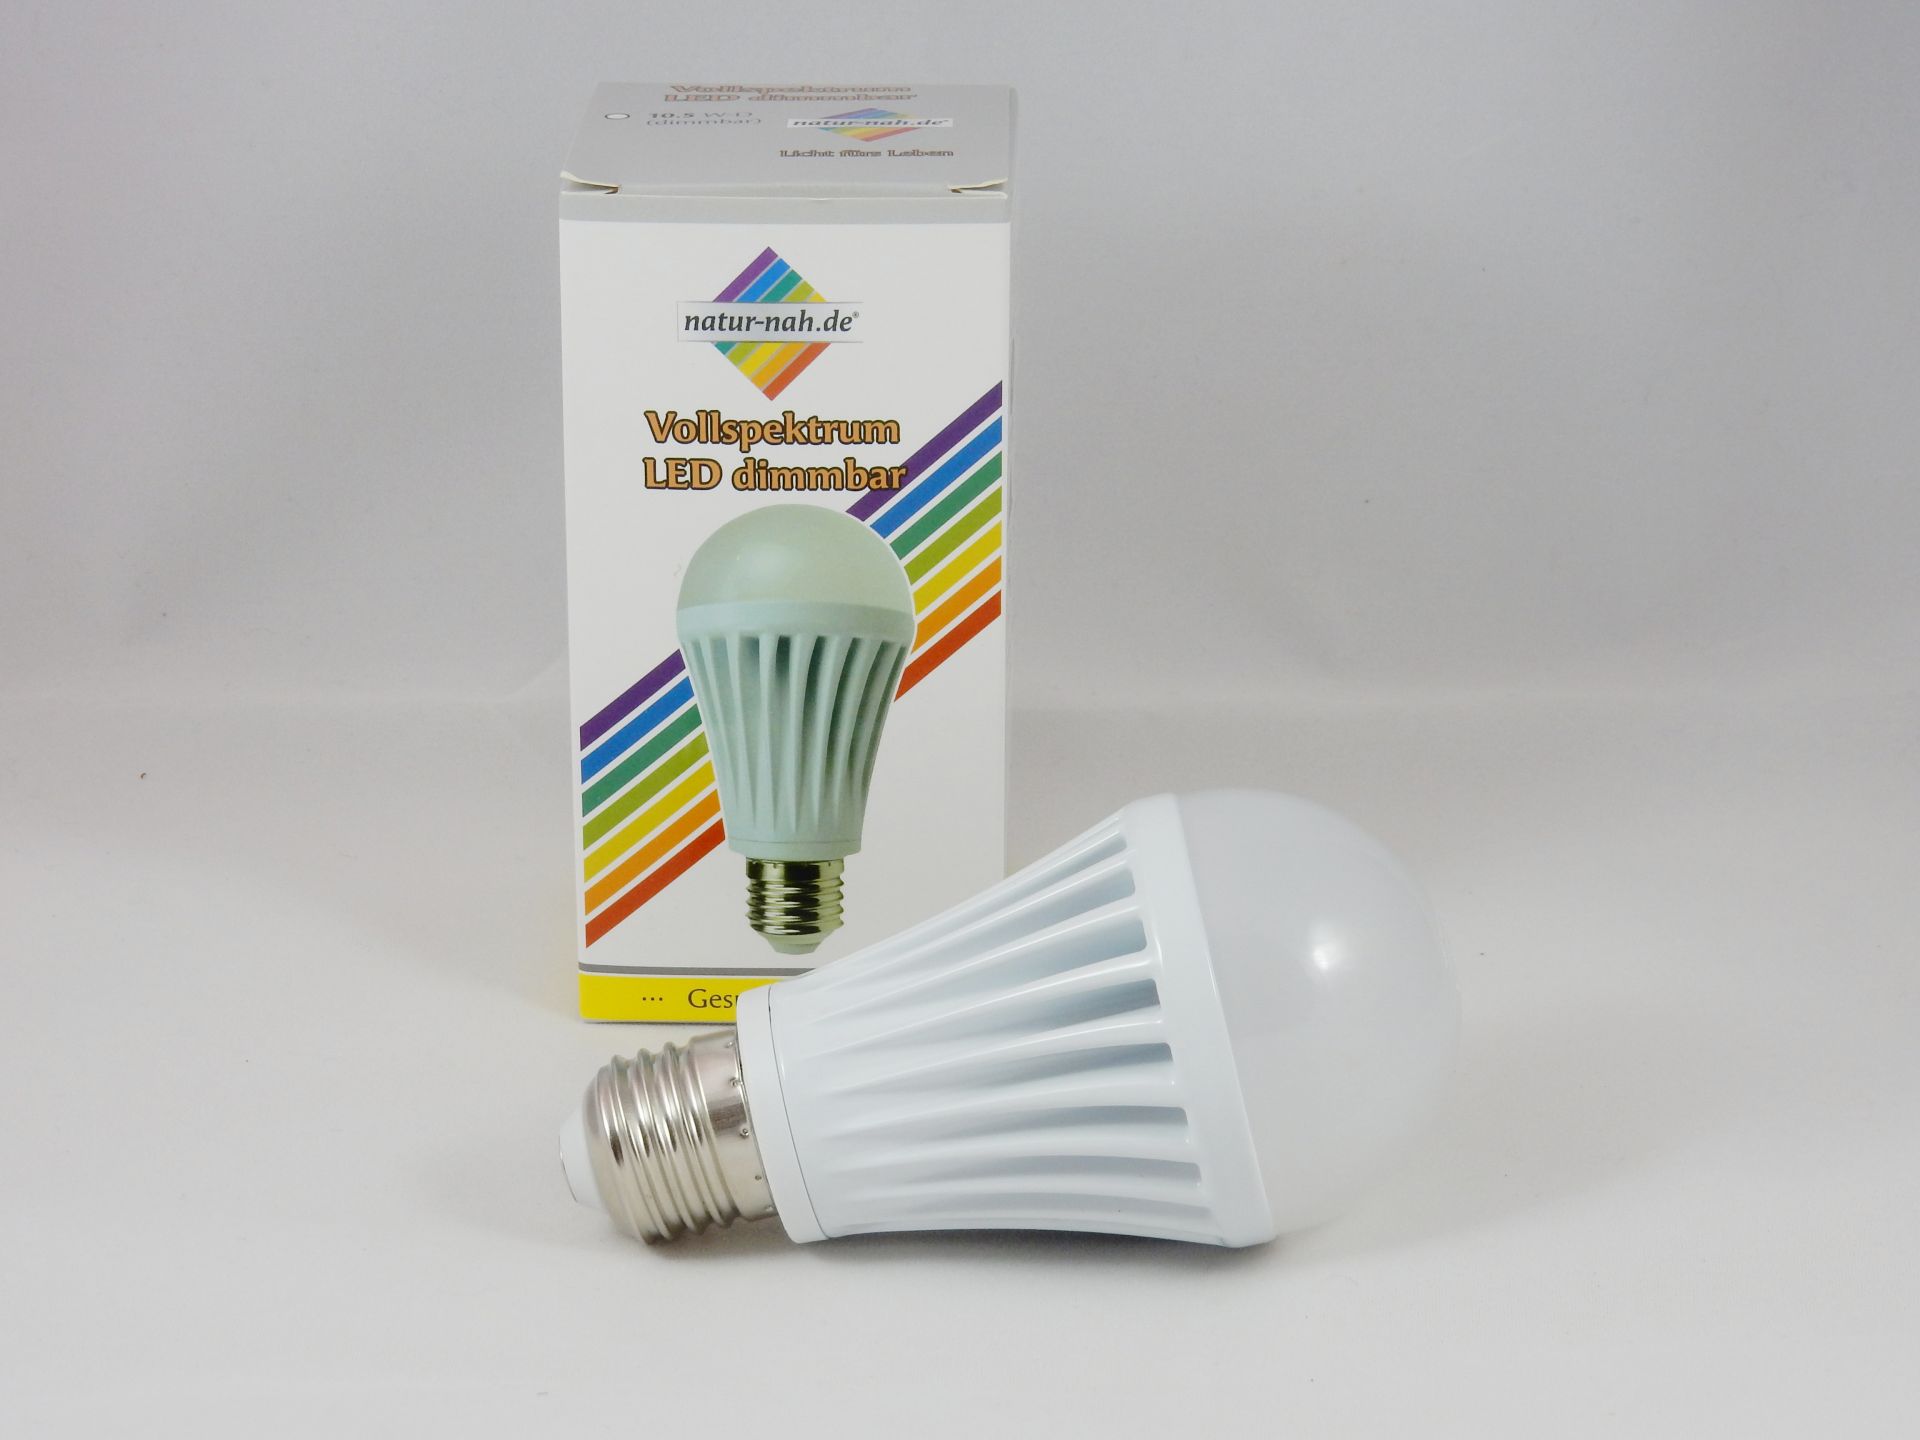 LED-Lampe-10,5W-E27-Vollspektrumlicht-Verpackung